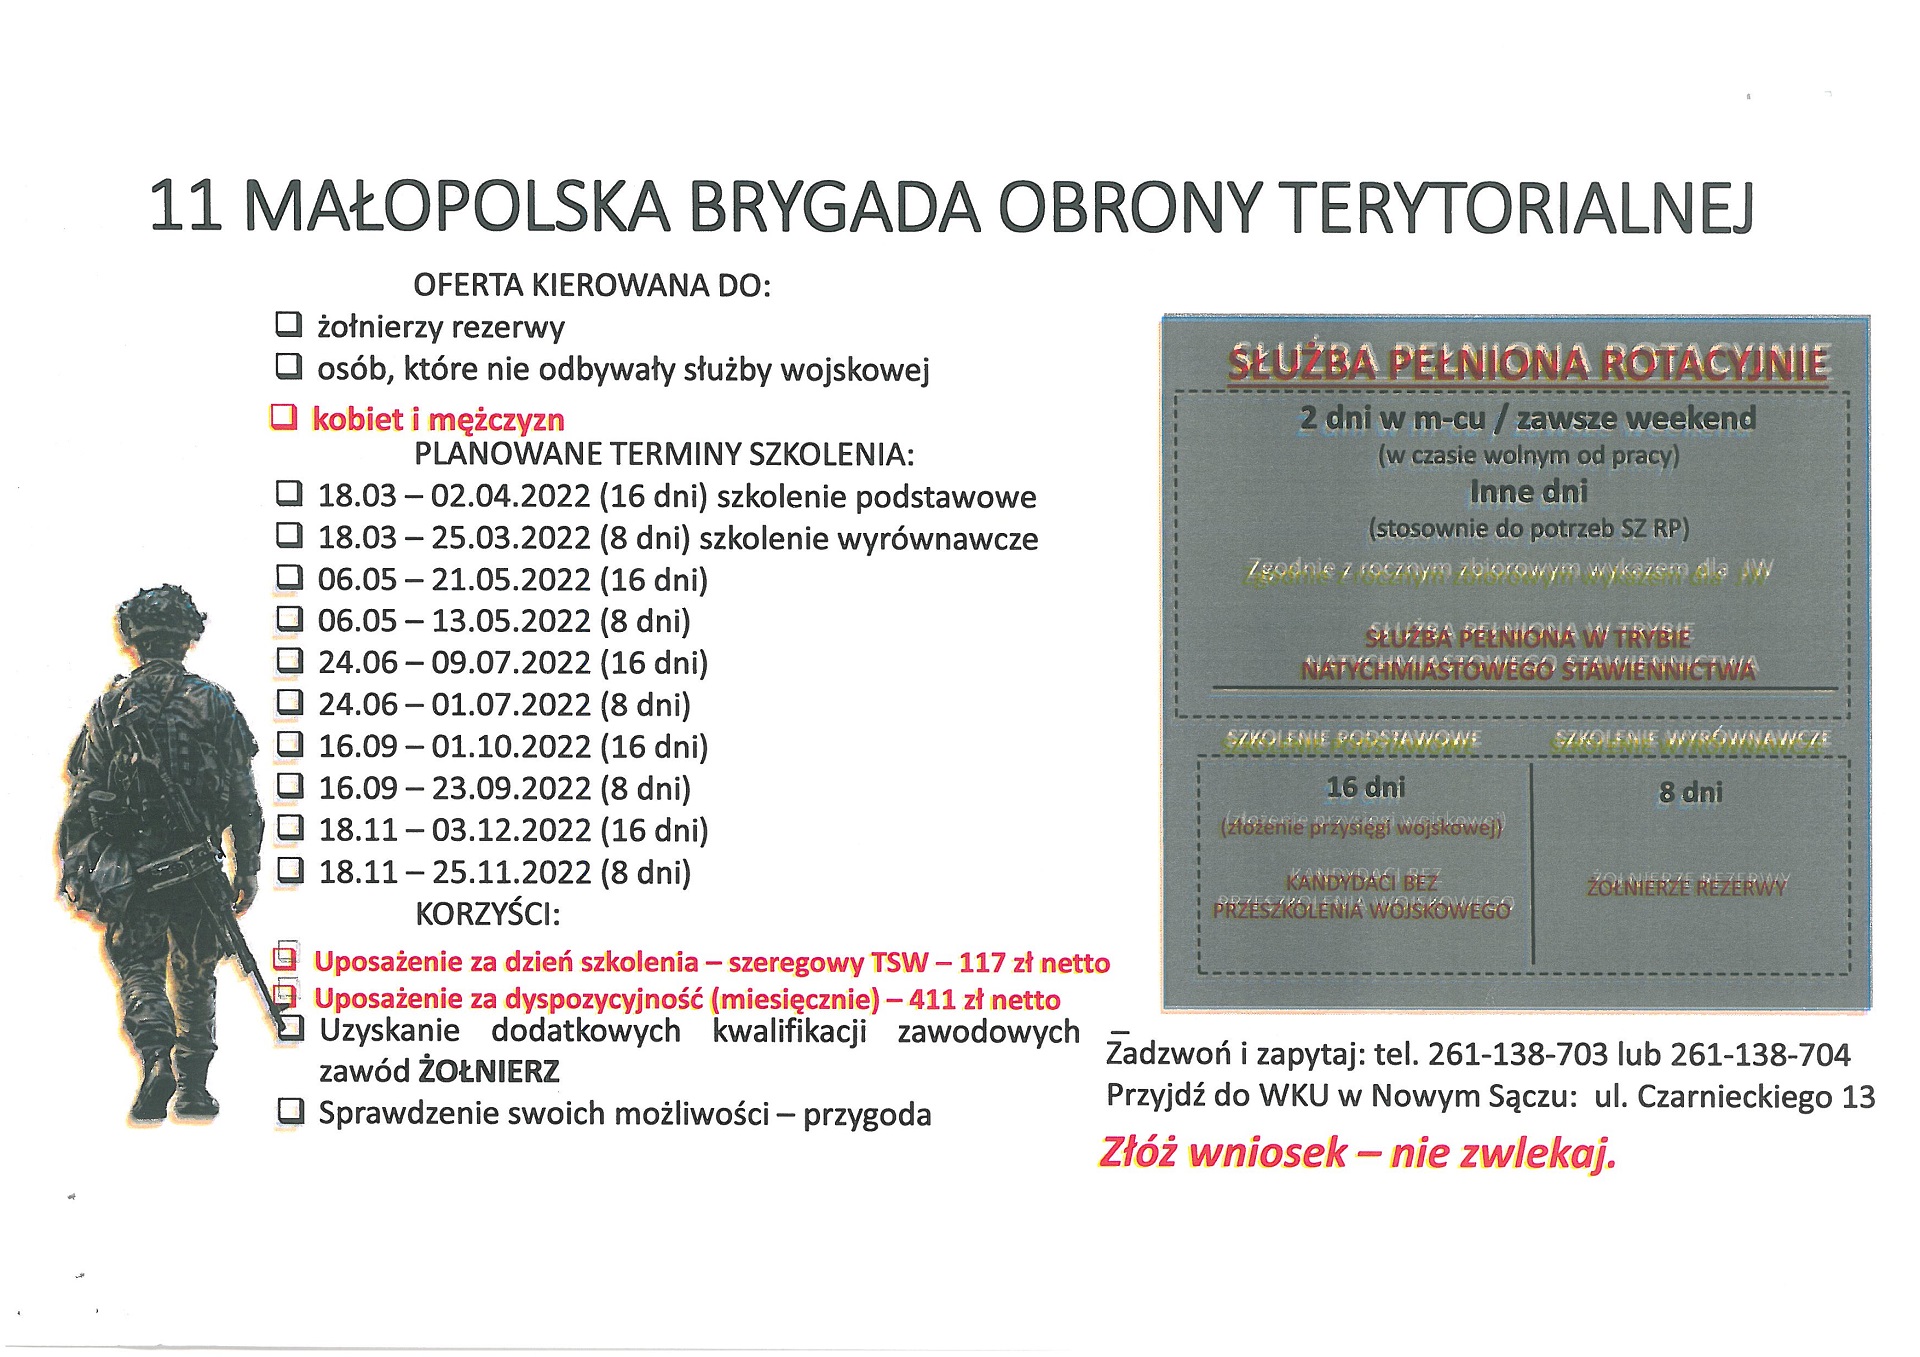 Plakat MBOT opisujący ofertę oraz terminy szkoleń dla przyszłych żołnierzy Małopolskiej Brygady Obrony Terytorialnej